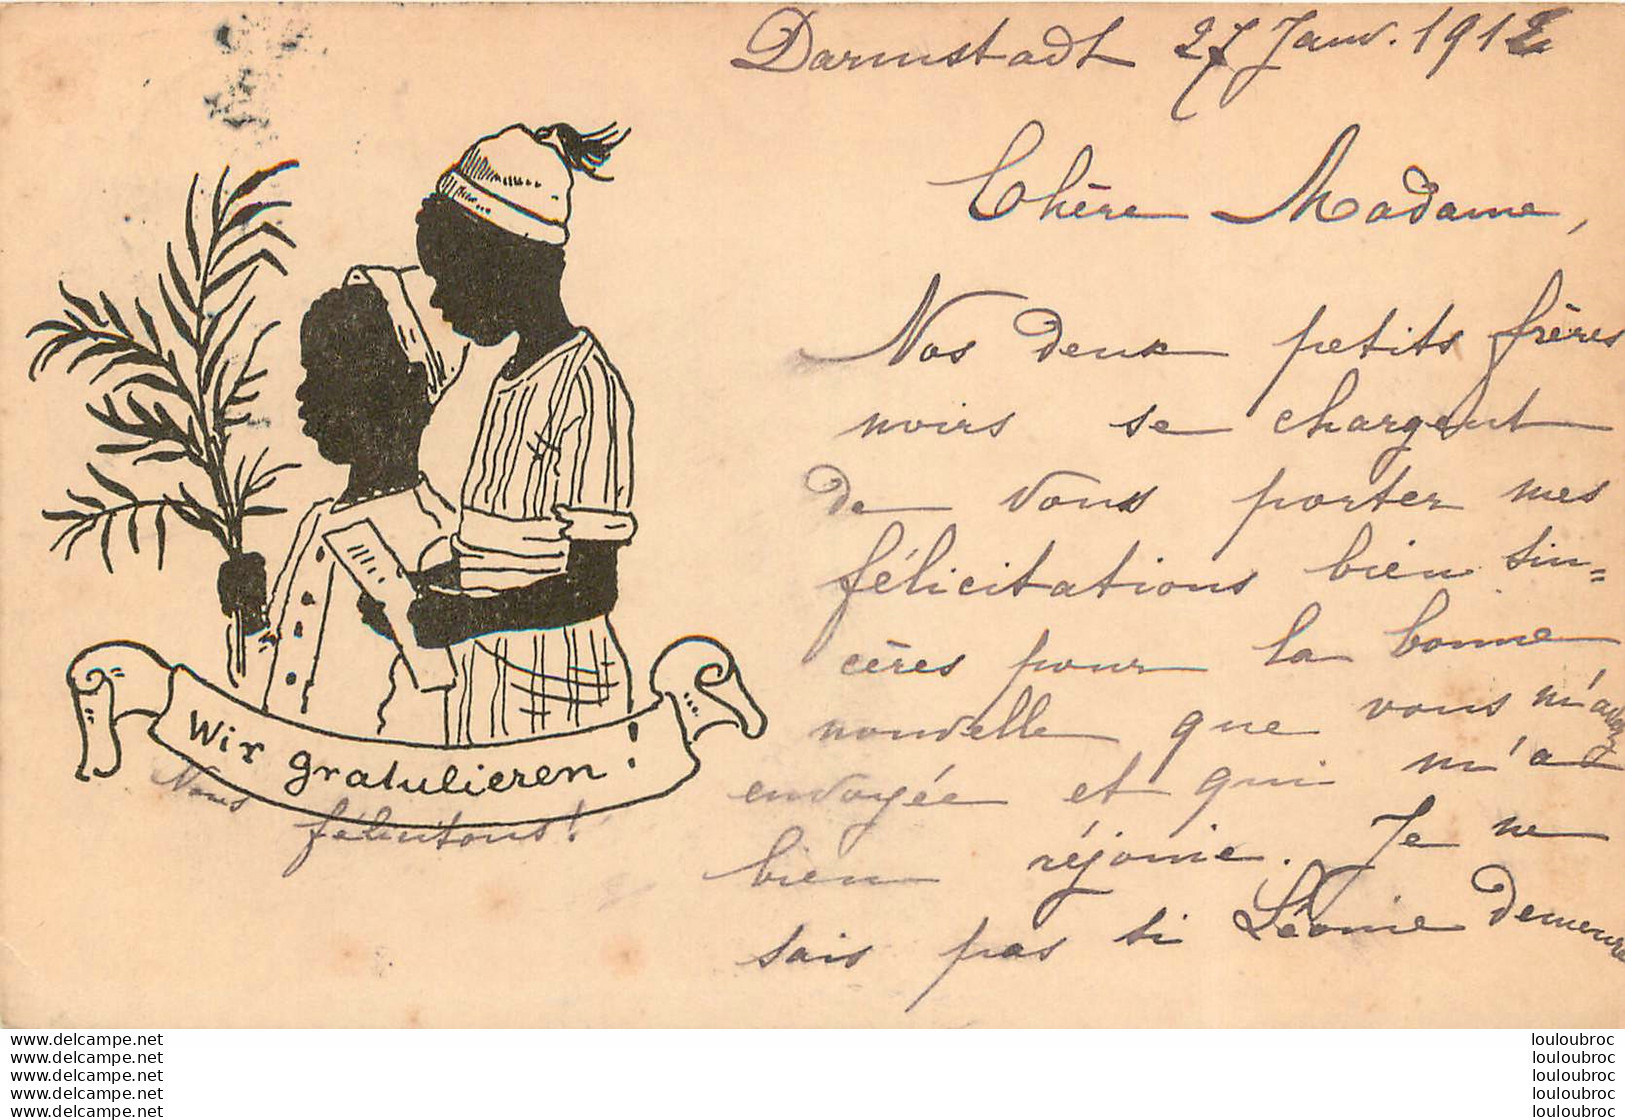 WIR GRATULIEREN NOUS FELICITONS CARTE ALLEMANDE 1912 SILHOUETTES ENFANTS AFRIQUE - Silhouettes